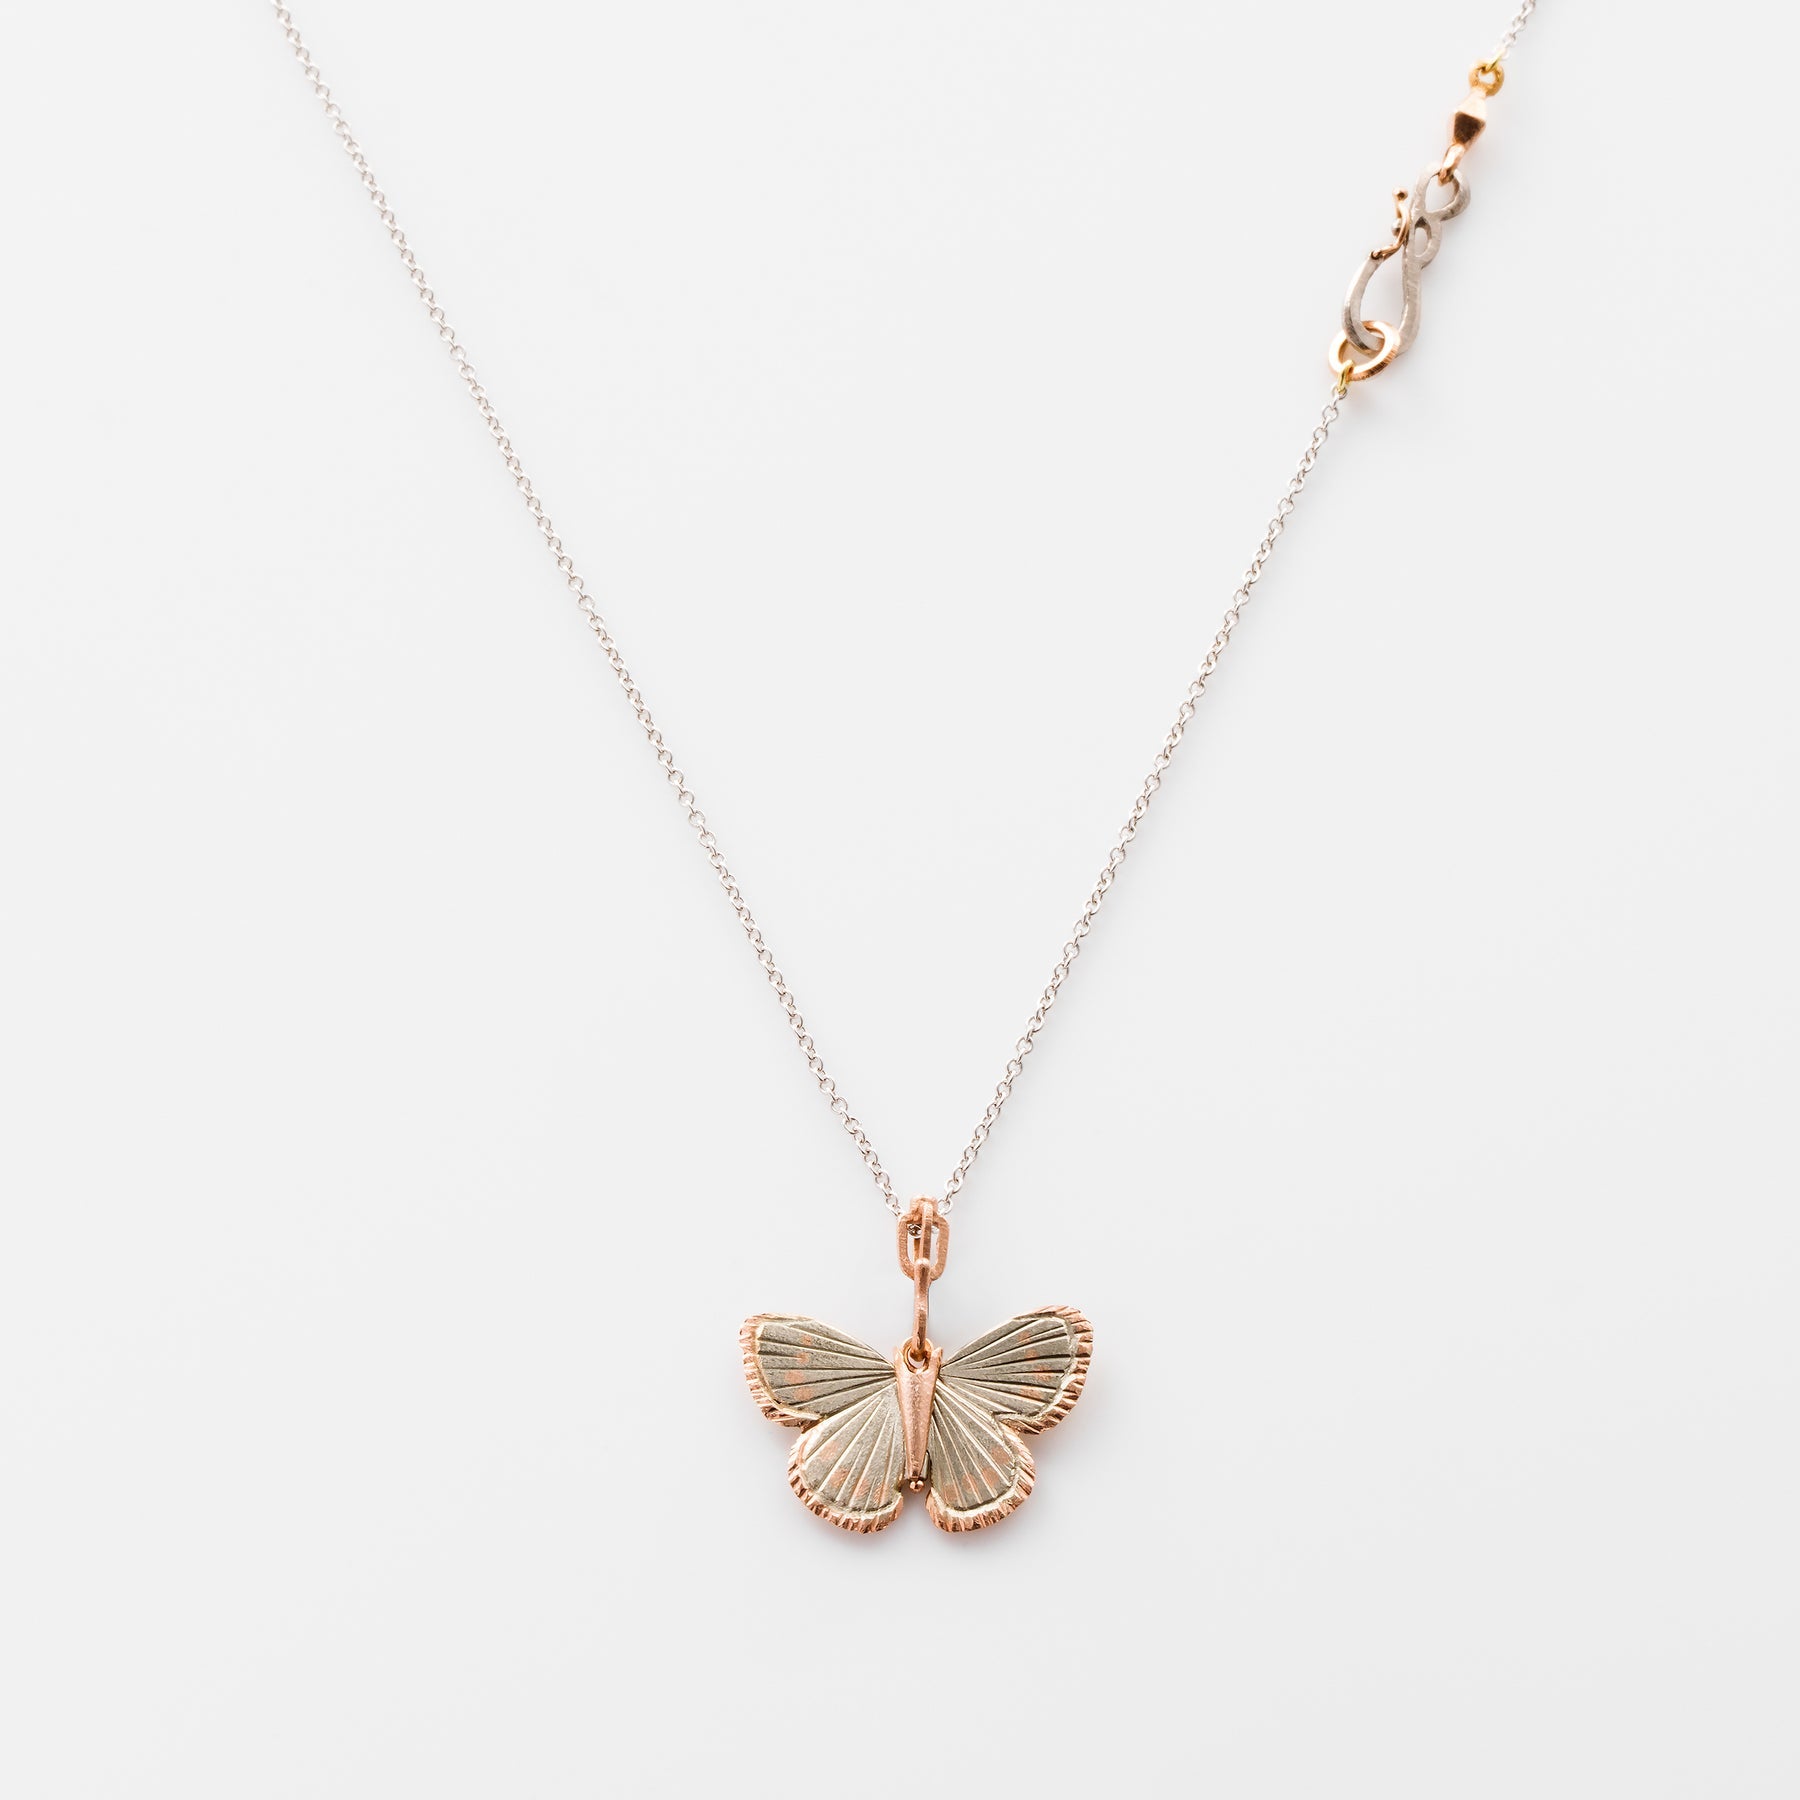 Palos Verde Butterfly Necklace Pendant James Banks Design No Diamonds  